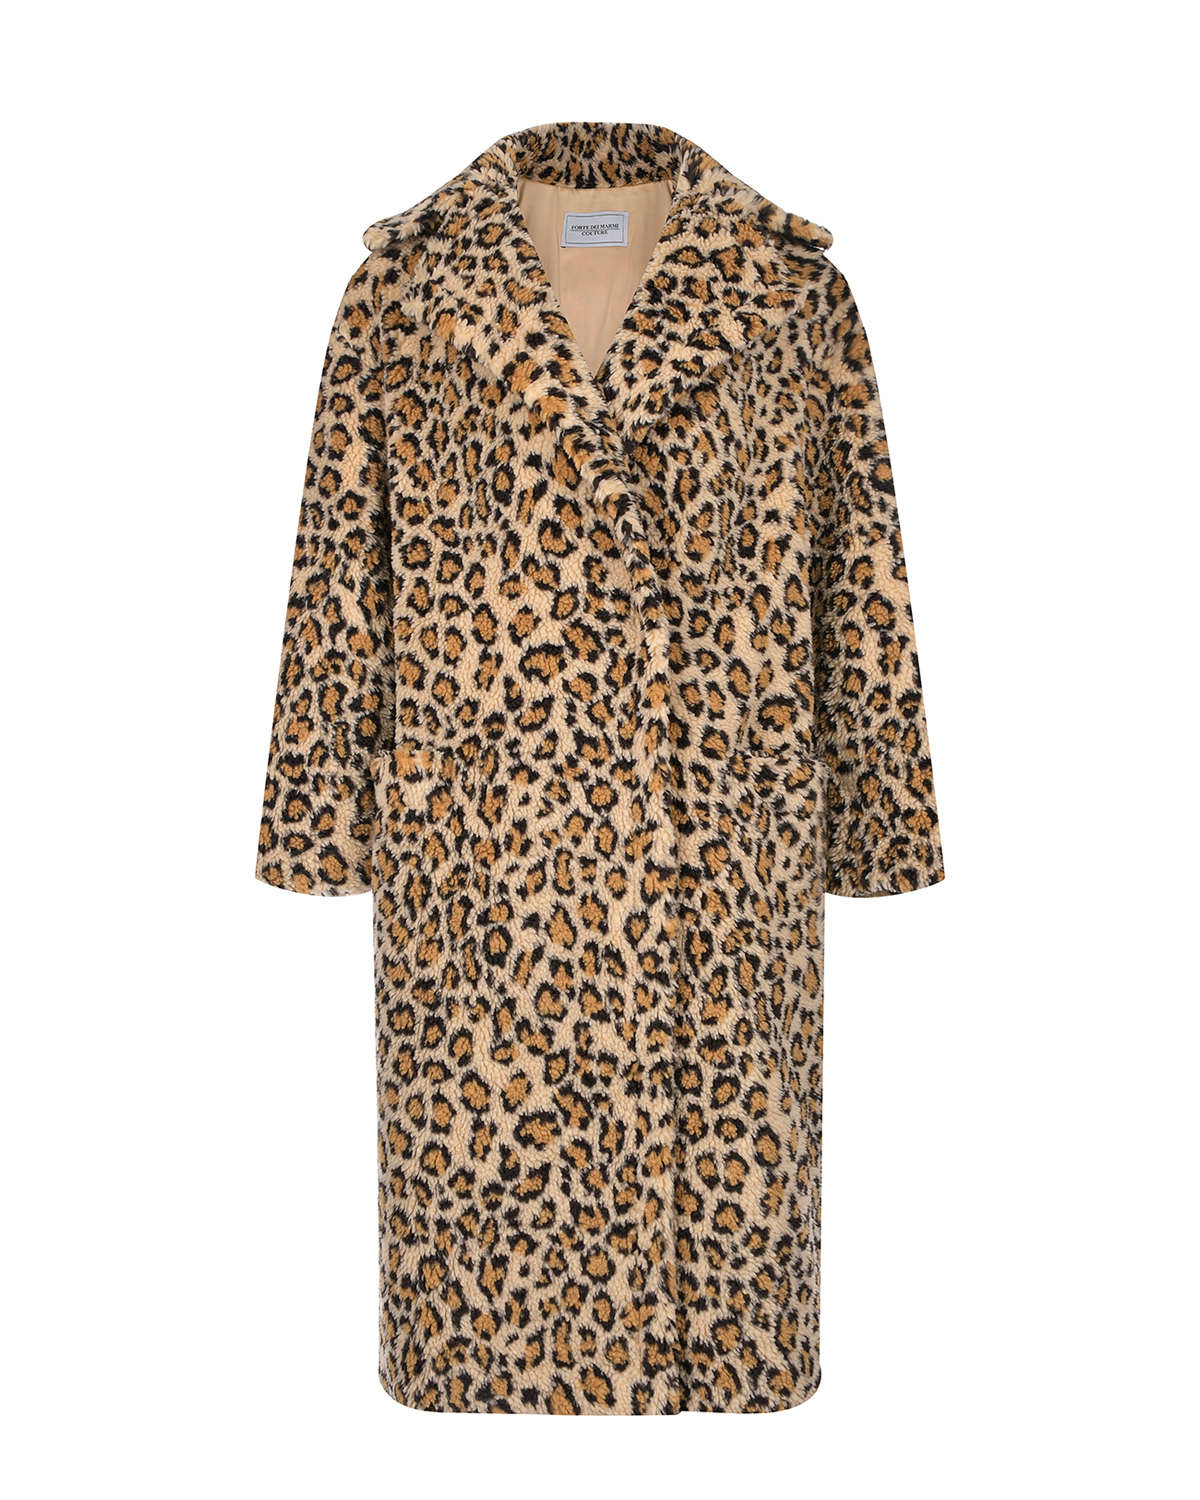 Пальто из эко-меха с леопардовым принтом Forte dei Marmi Couture, размер 36, цвет нет цвета - фото 1